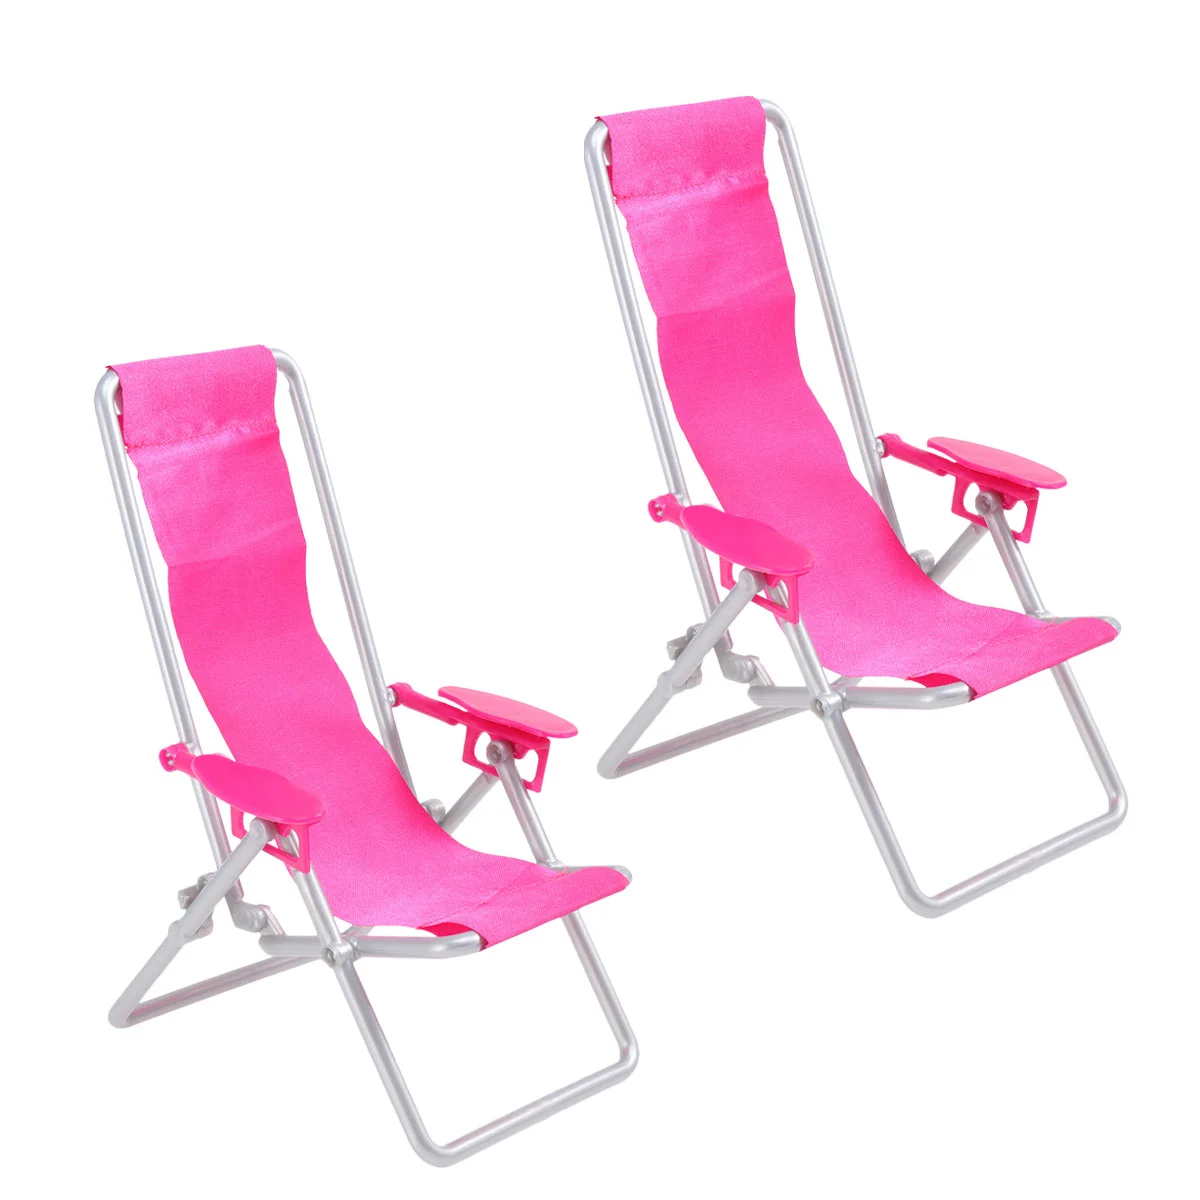 2 предмета, складной стул с откидной спинкой, подарок на день рождения, Приморские пластиковые игровые наборы на открытом воздухе